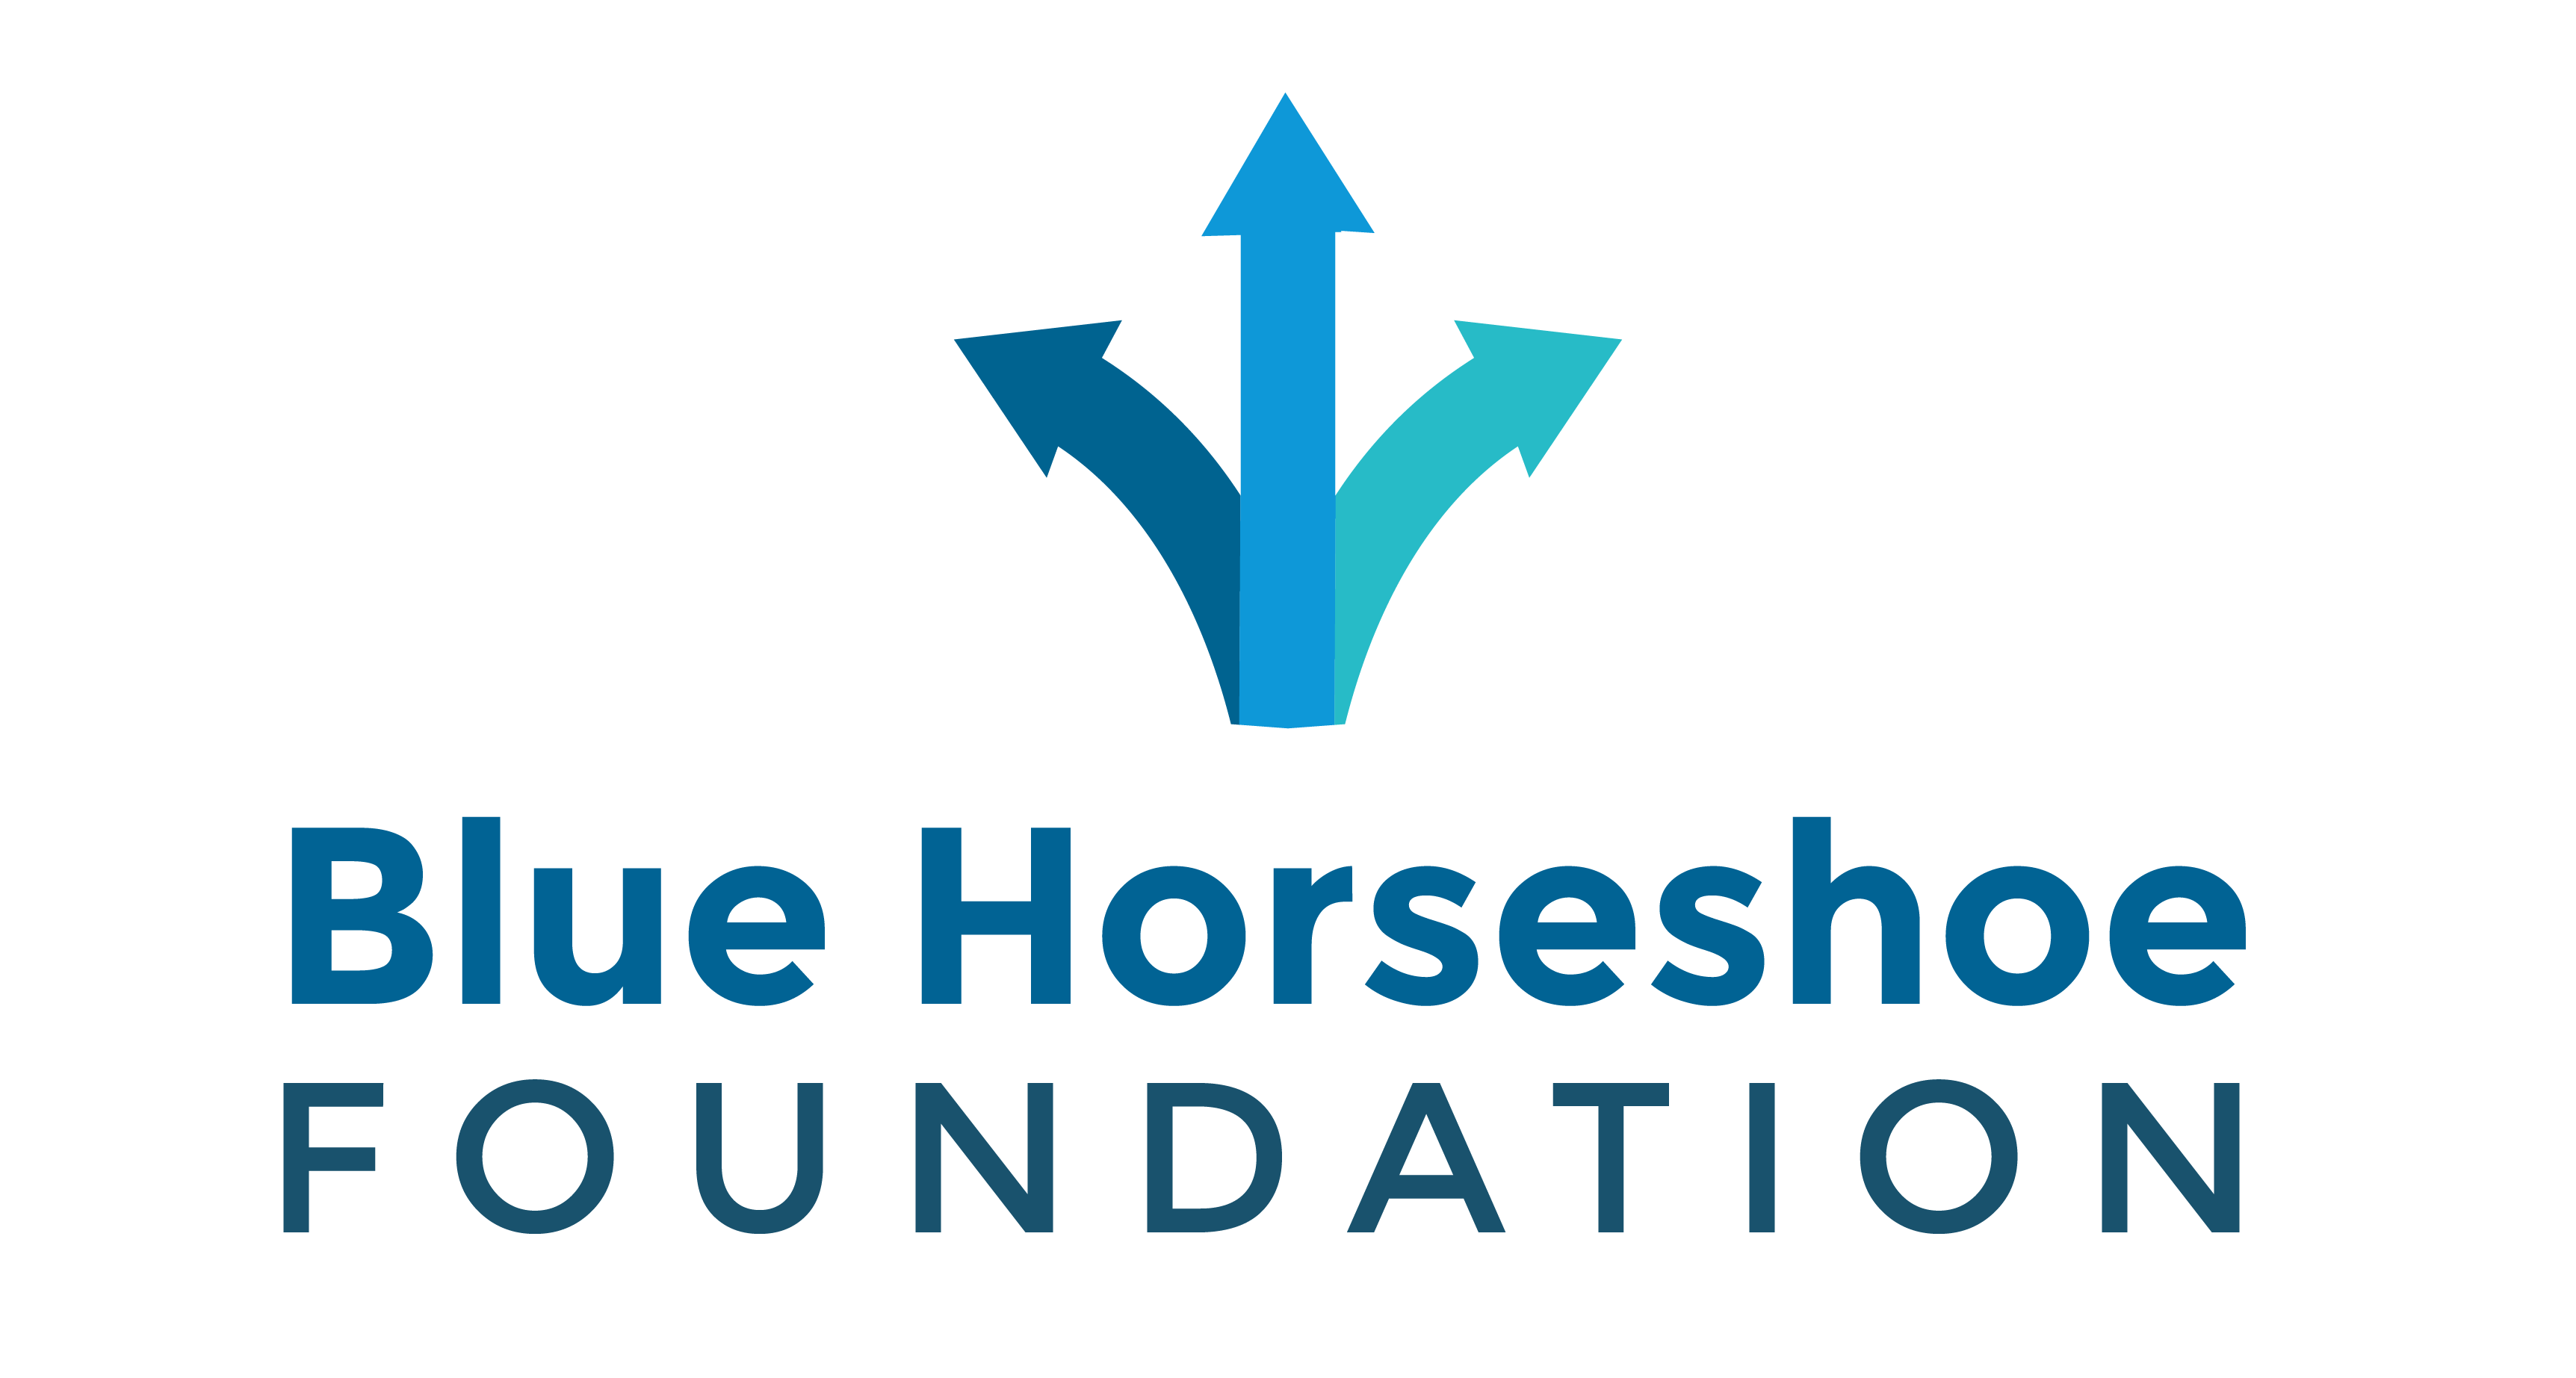 Blue Horseshoe Foundation